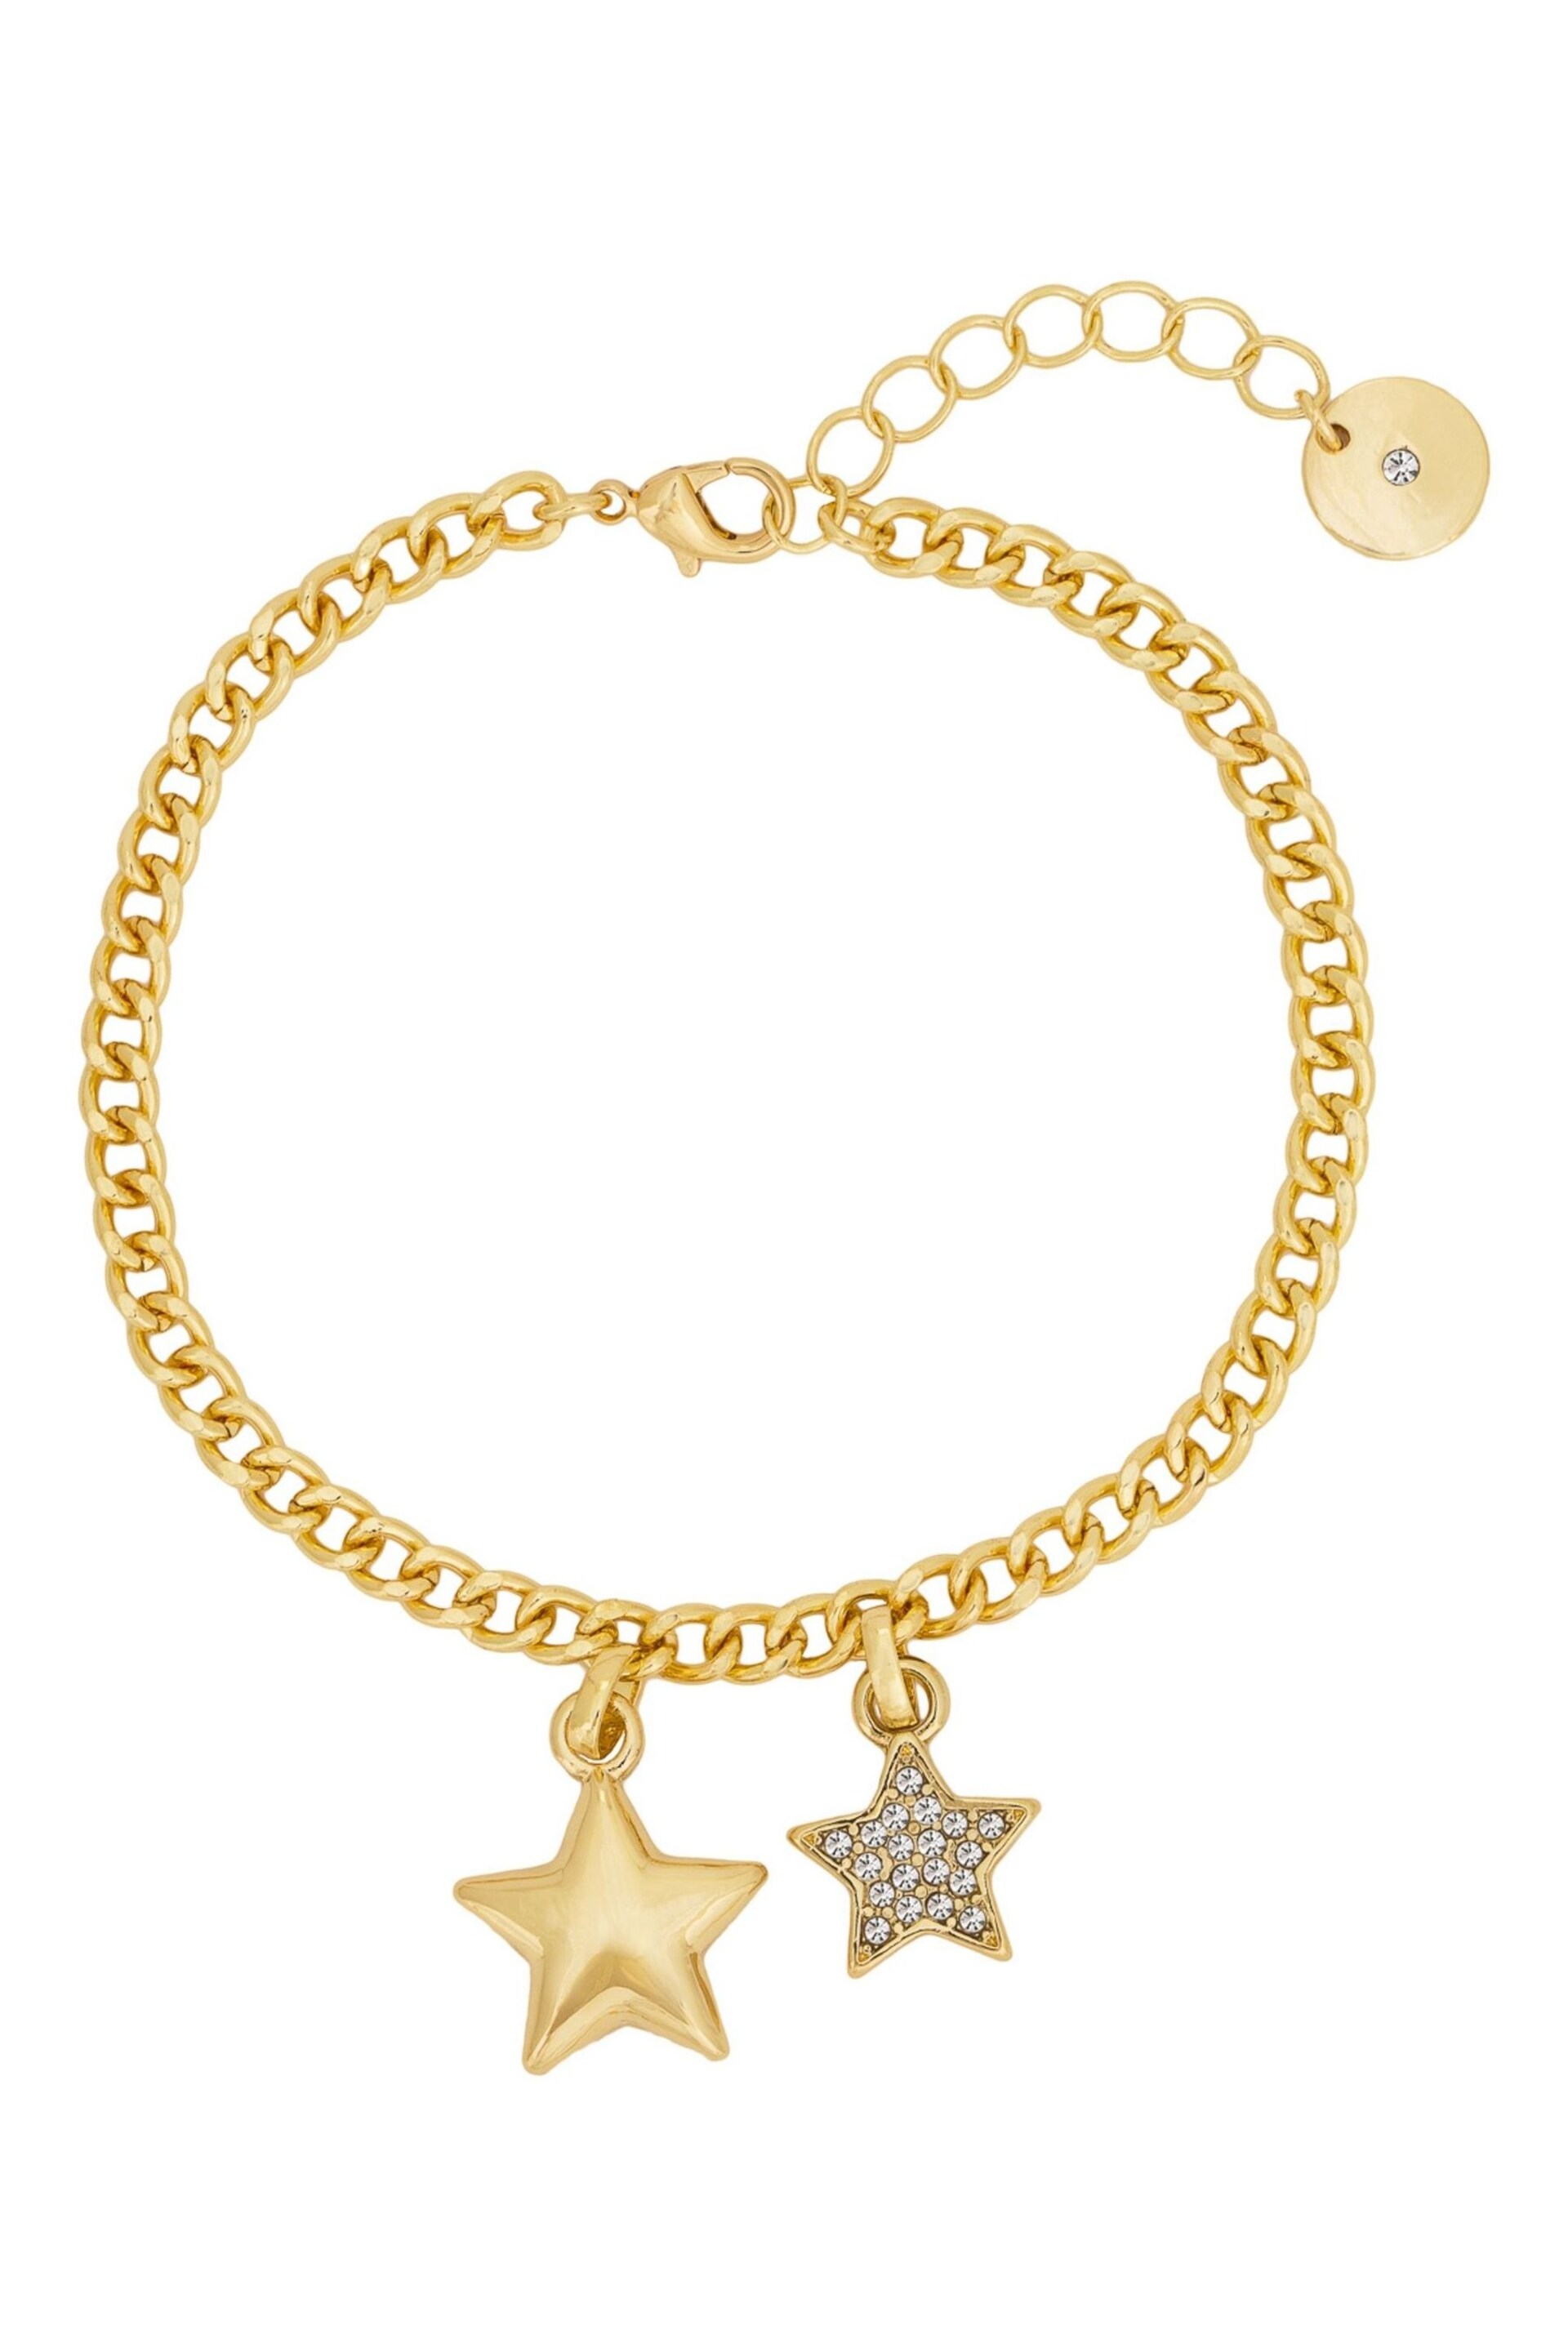 Caramel Jewellery London Gold Tone 'Starry Sky' Pavé Bracelet - Image 1 of 4